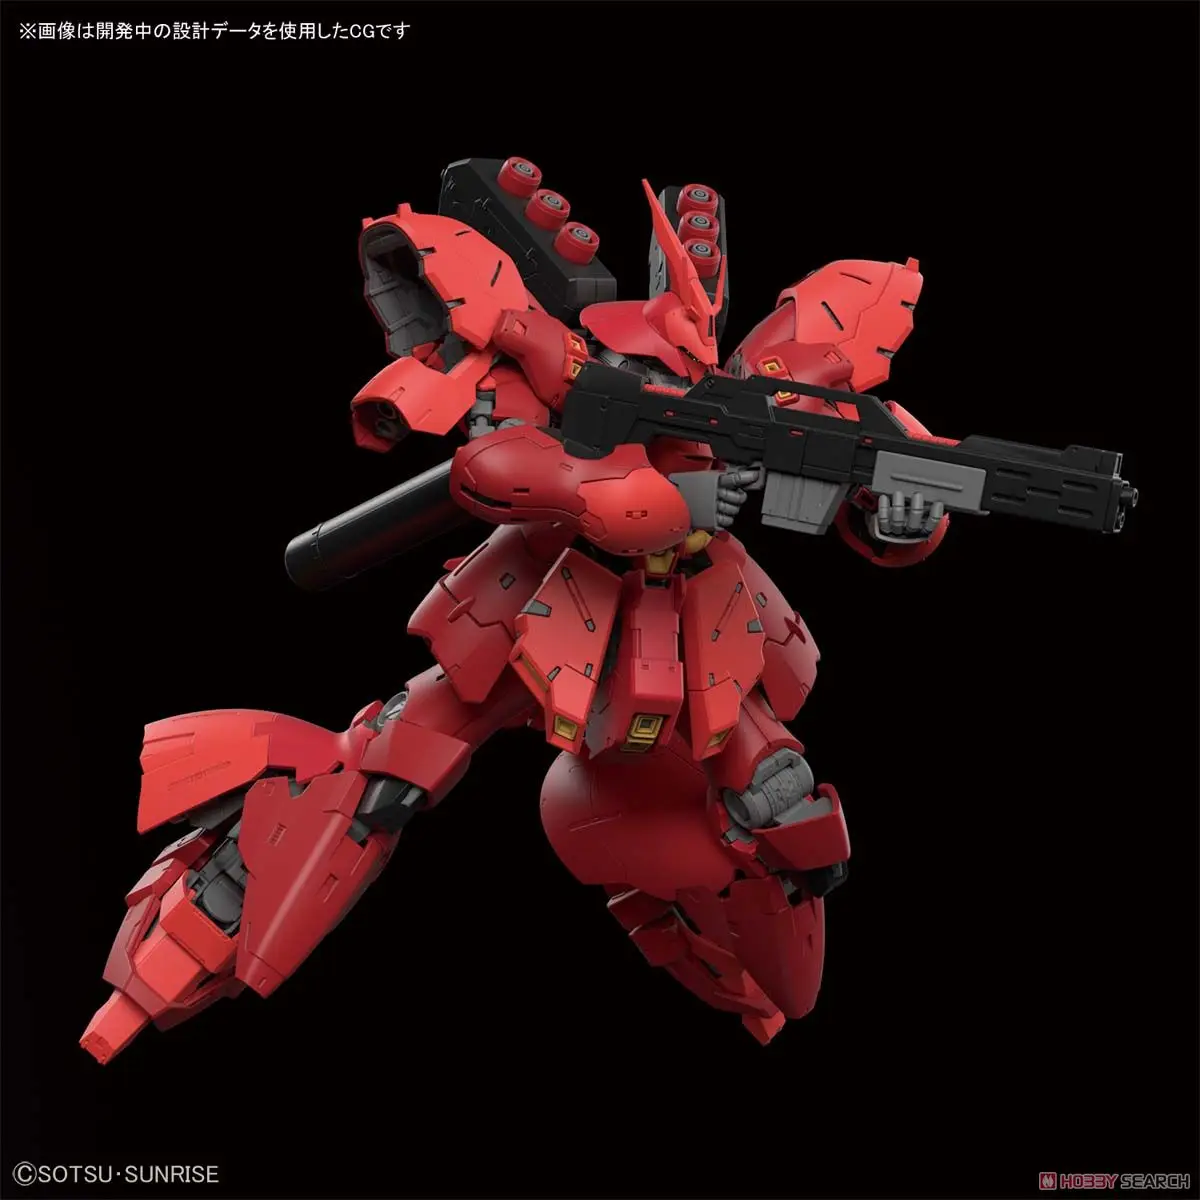 Bandai Gundam RG 29 1/144 MSN-04 Sazabi Mobilne bo Ustrezala Sestavi Model Kompleti figuric Plastični Model igrače